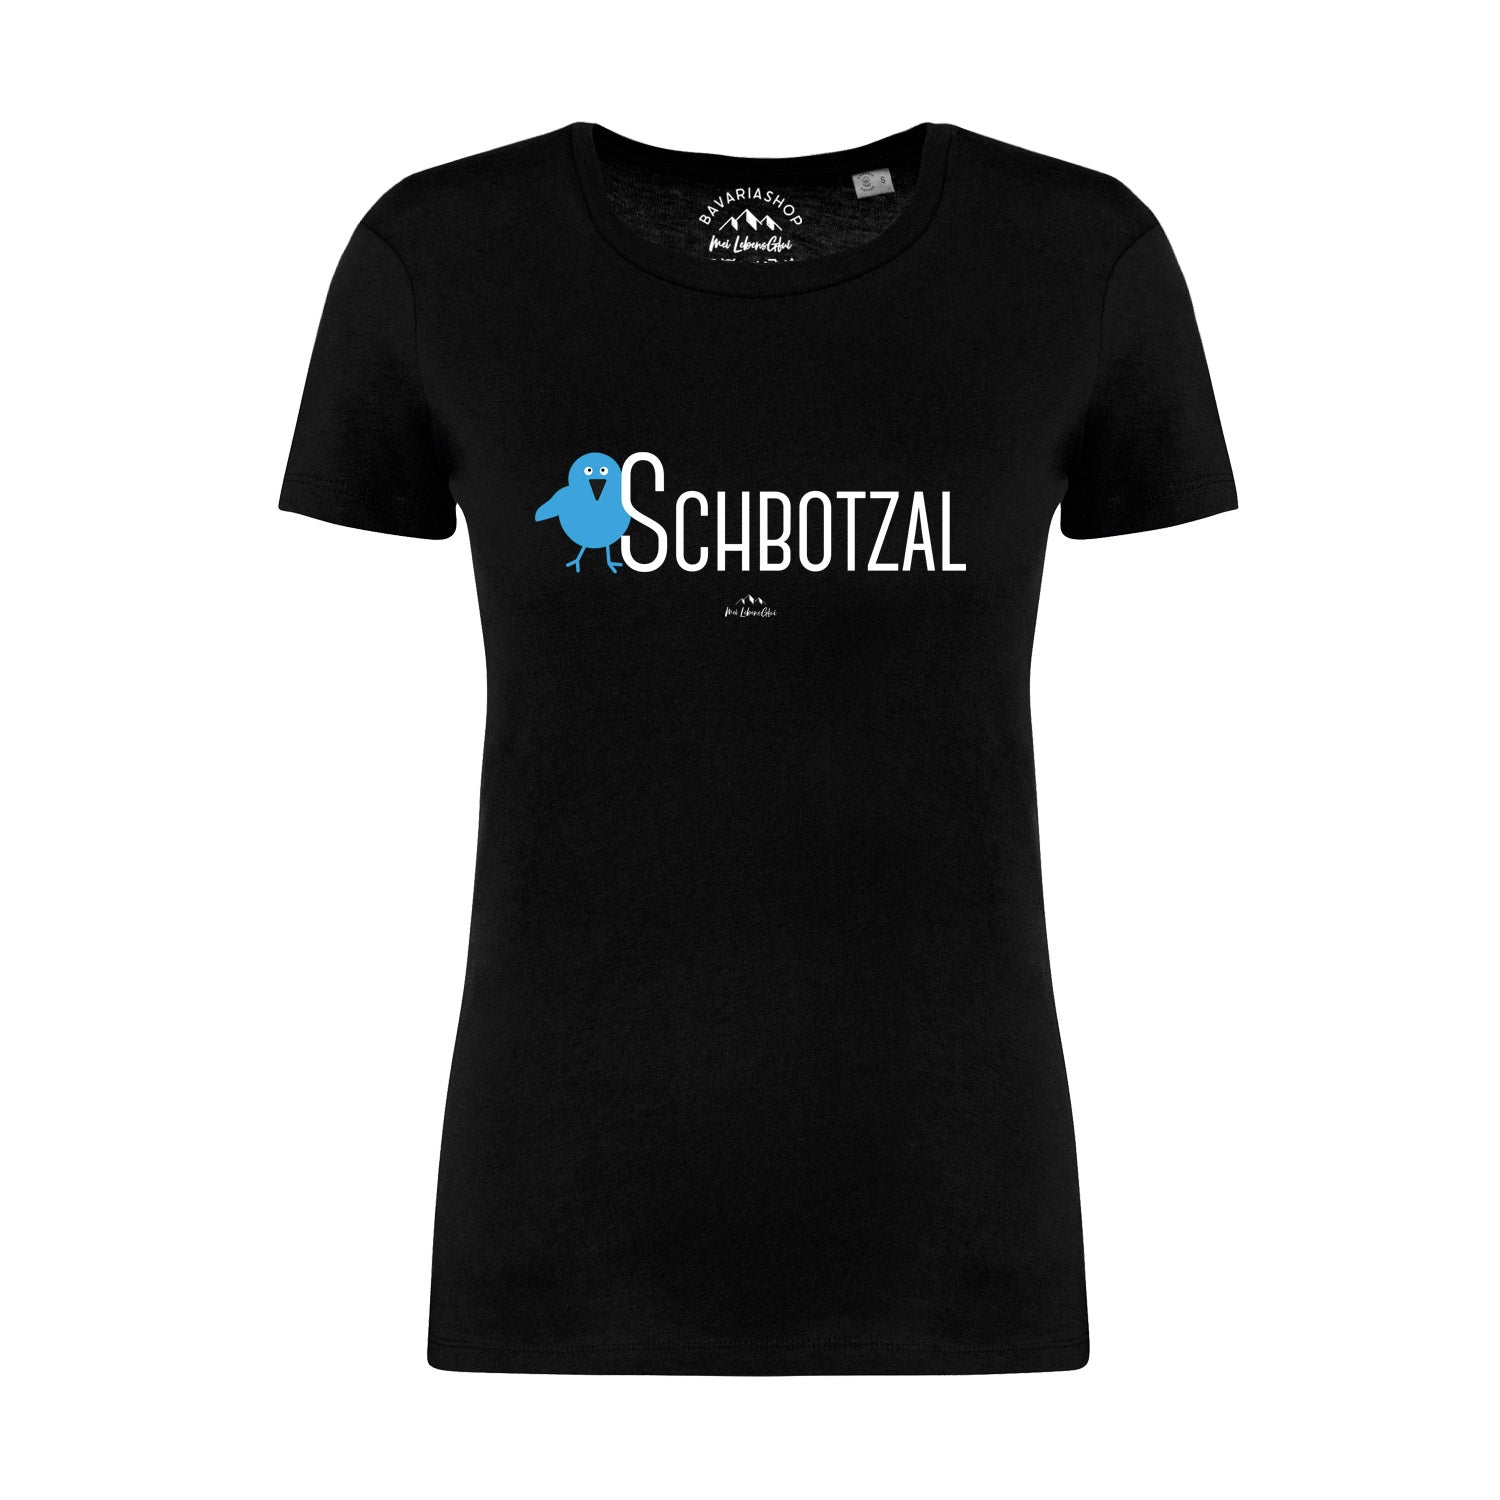 Damen T-Shirt "Schbotzal"